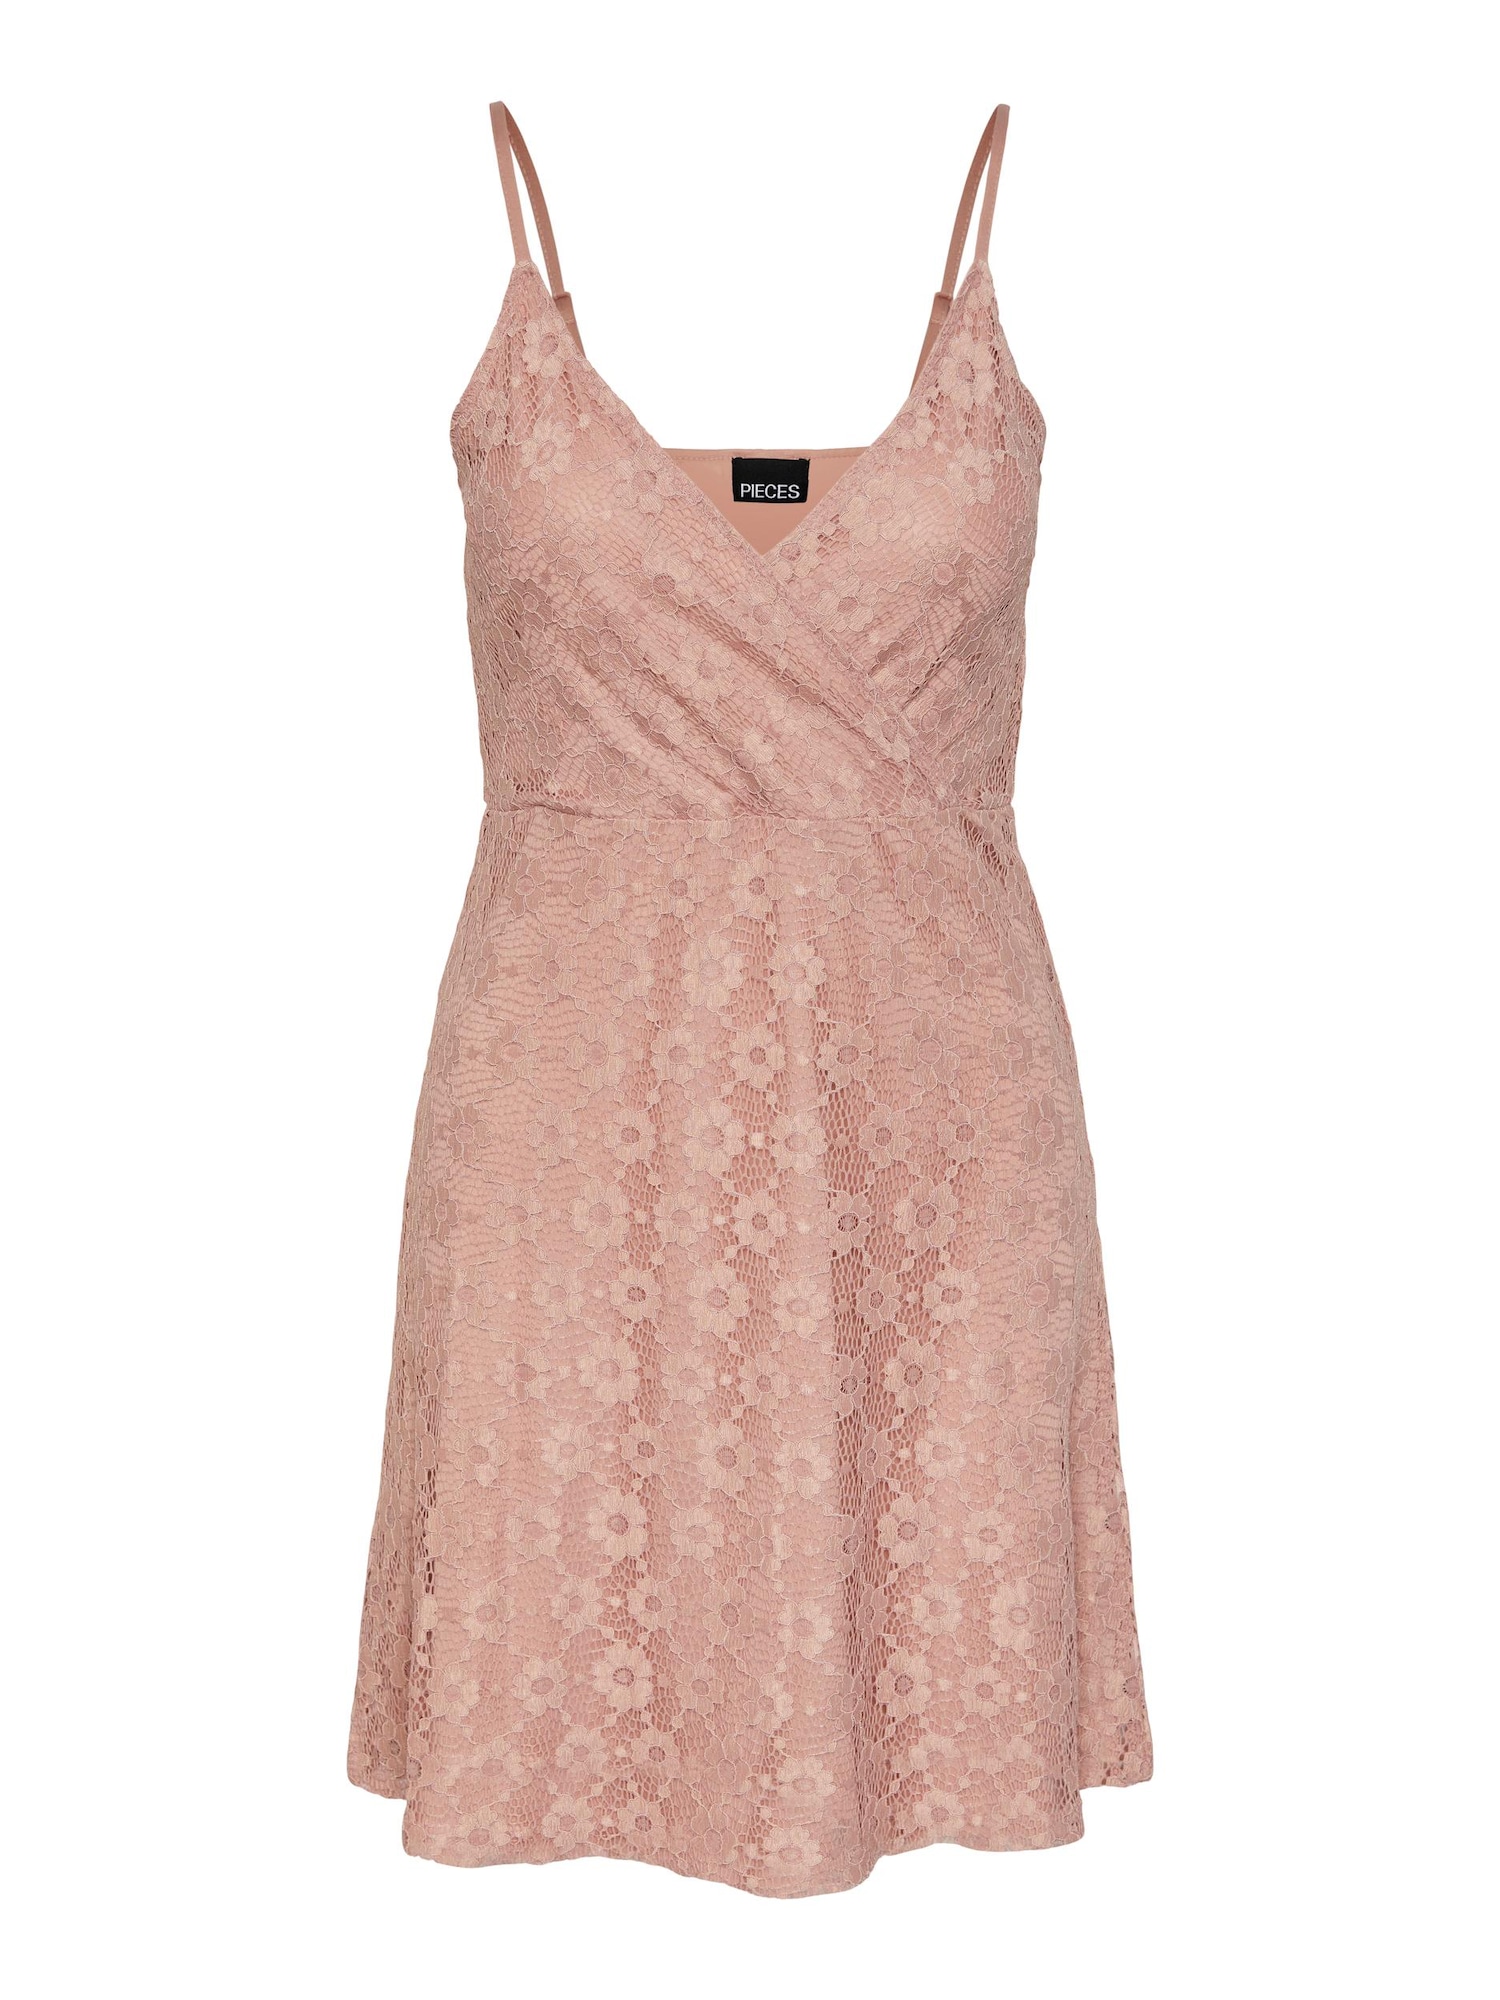 PIECES Vasarinė suknelė 'Jada' ryškiai rožinė spalva